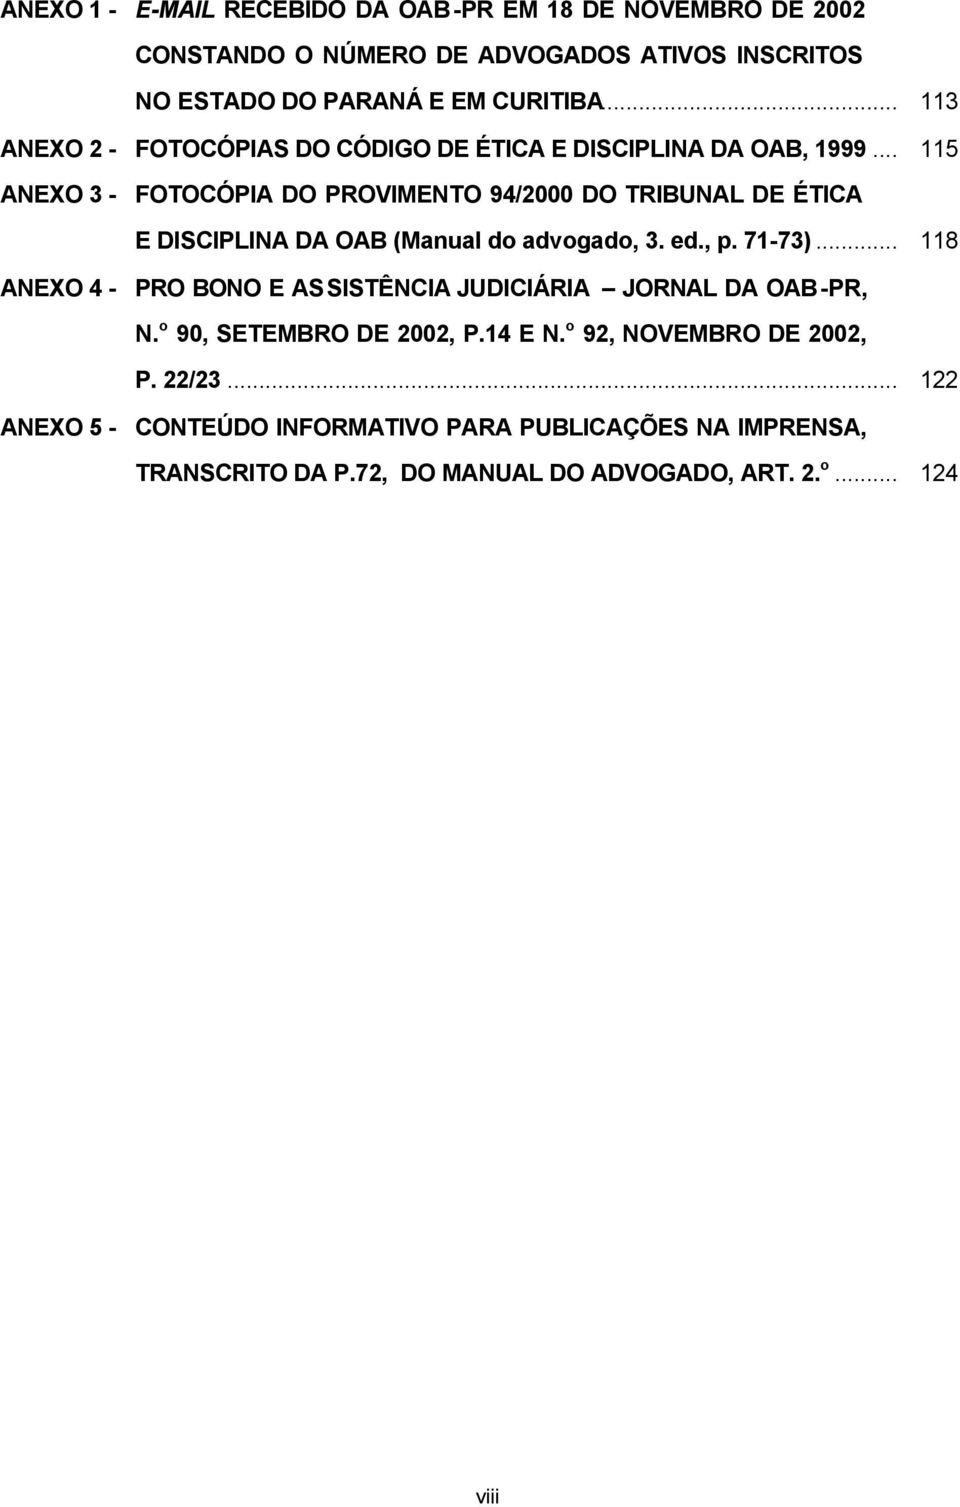 .. 115 ANEXO 3 - FOTOCÓPIA DO PROVIMENTO 94/2000 DO TRIBUNAL DE ÉTICA E DISCIPLINA DA OAB (Manual do advogado, 3. ed., p. 71-73).